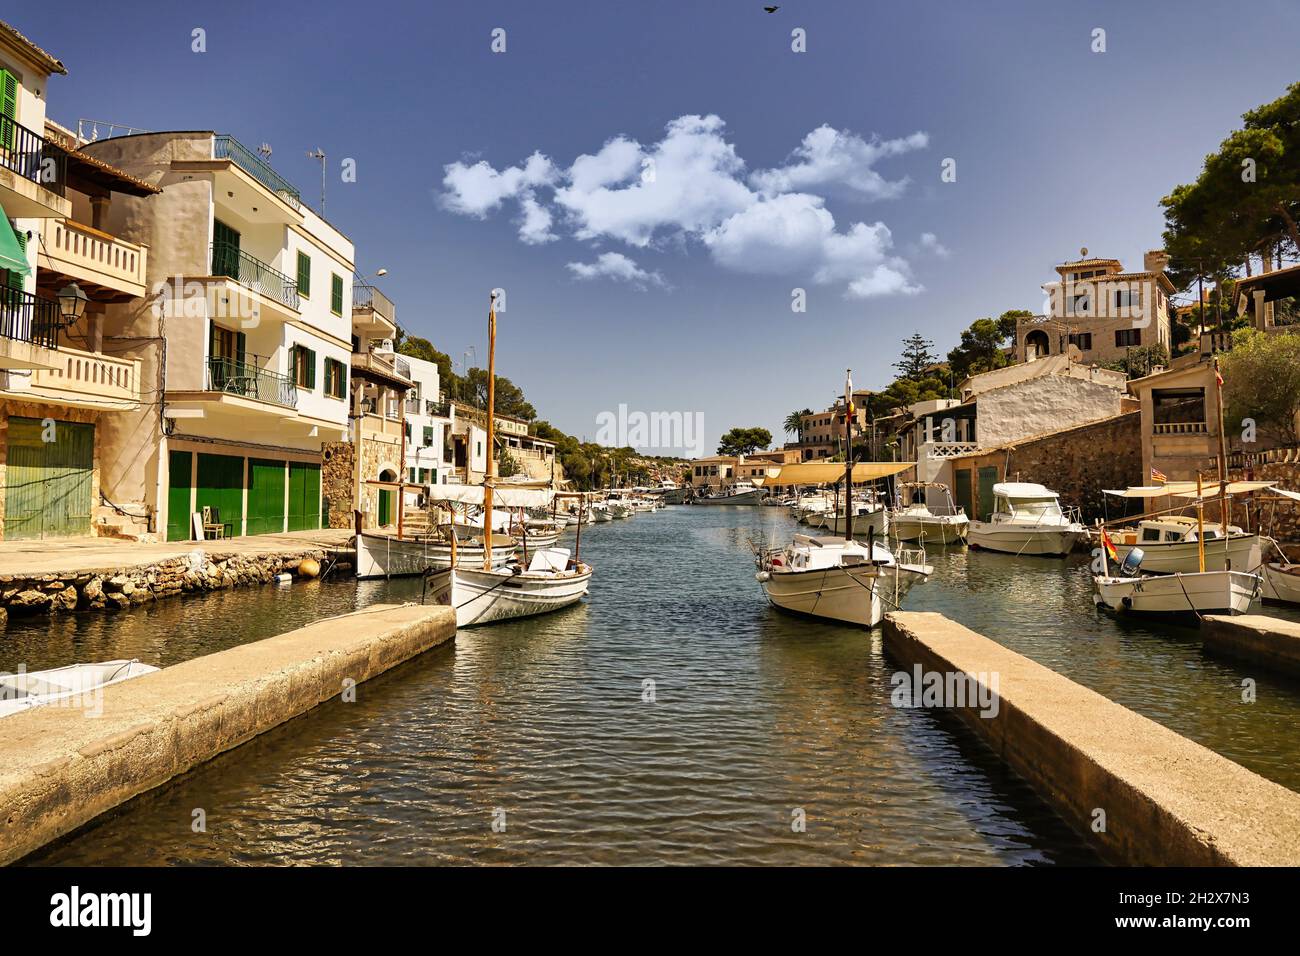 Hafen Bucht von Cala Figuera Bilder Foto de stock